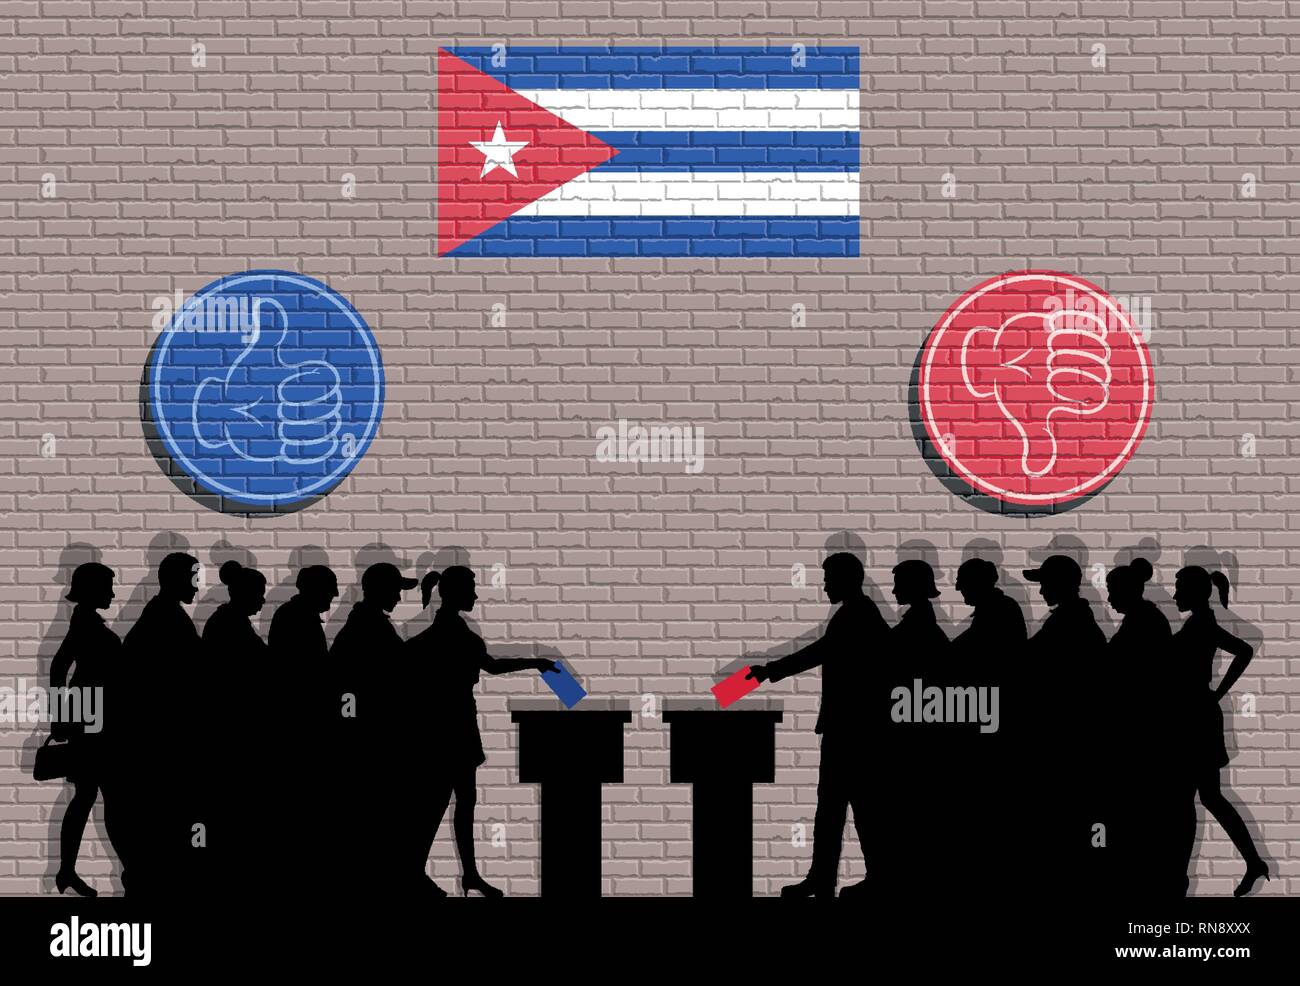 Kubanische Wähler Menge Silhouette im Wahlkampf mit Daumen Symbole und Kuba Flagge Graffiti. Alle die Silhouette Objekte, Icons und Hintergrund sind in verschiedenen l Stock Vektor